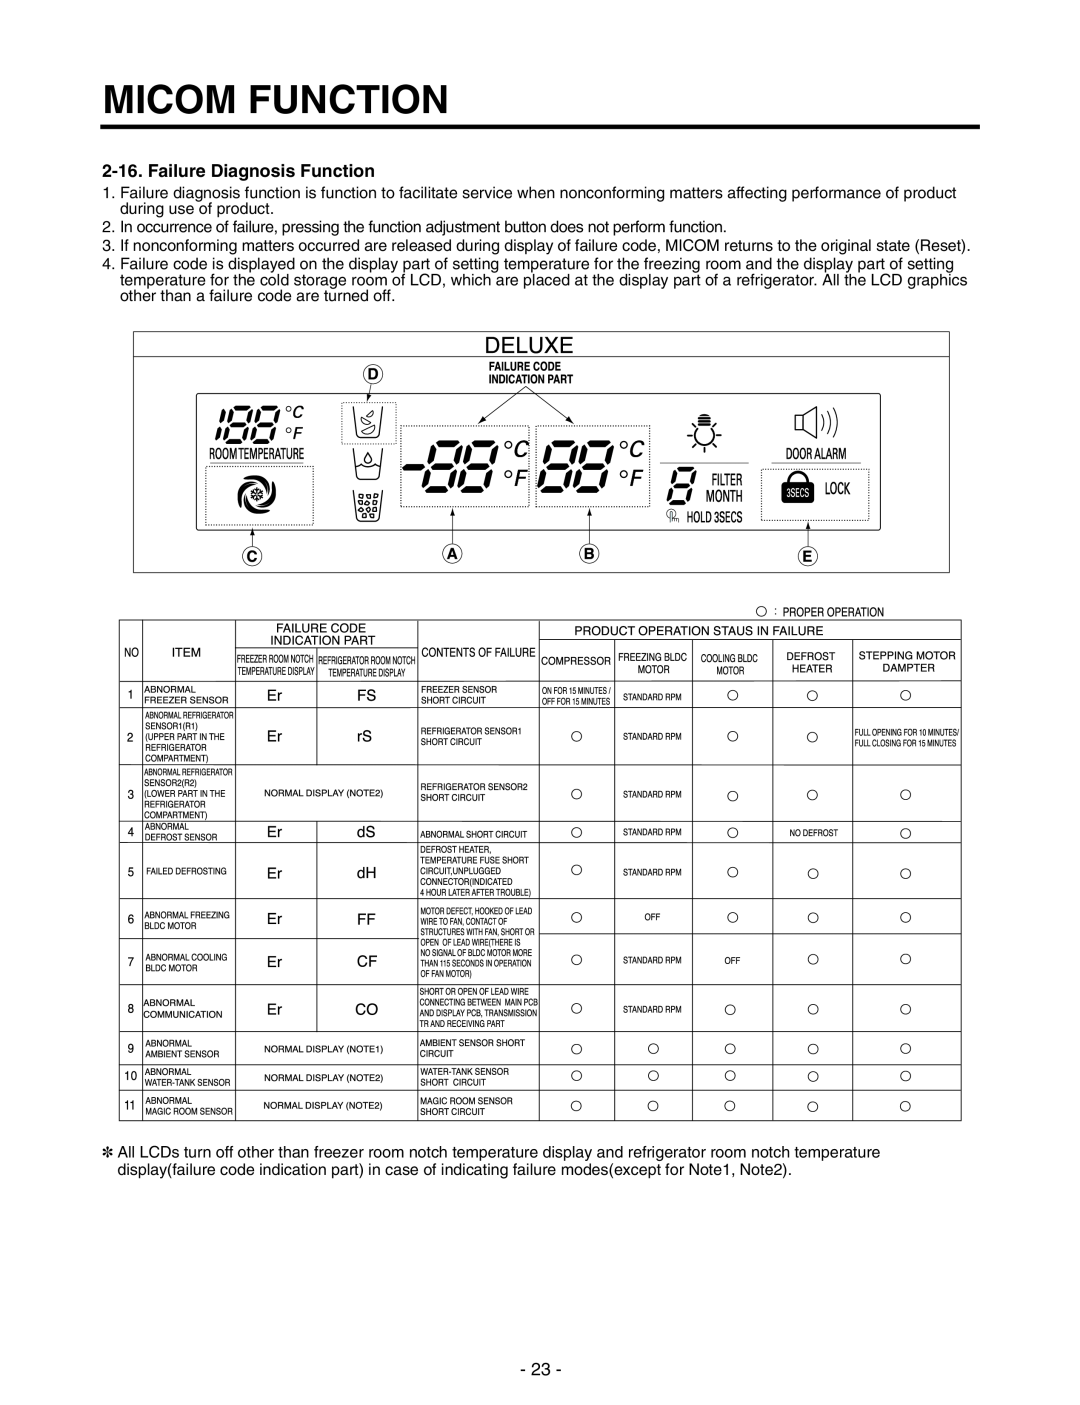 LG Electronics GR-P257/L257, GR-P227/L227 service manual Failure Diagnosis Function, Micom Function 